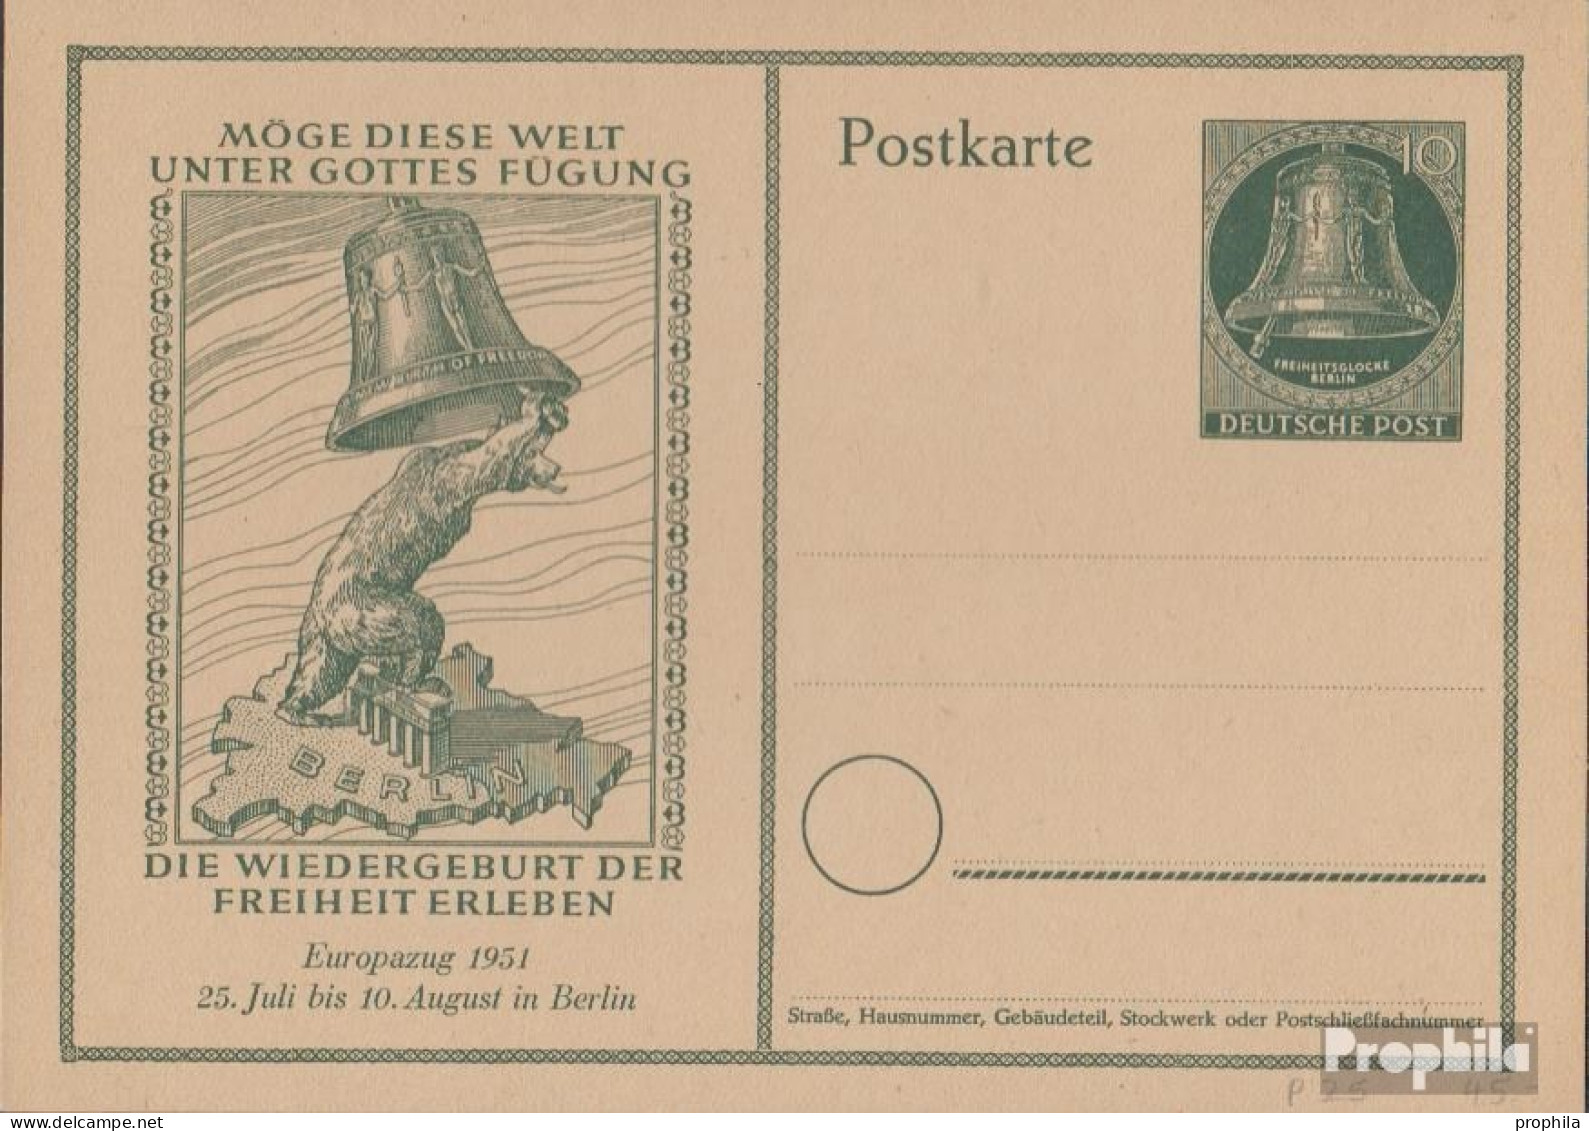 Berlin (West) P25 Amtliche Postkarte Gefälligkeitsgestempelt Gebraucht 1951 Glocke - Cartoline - Usati